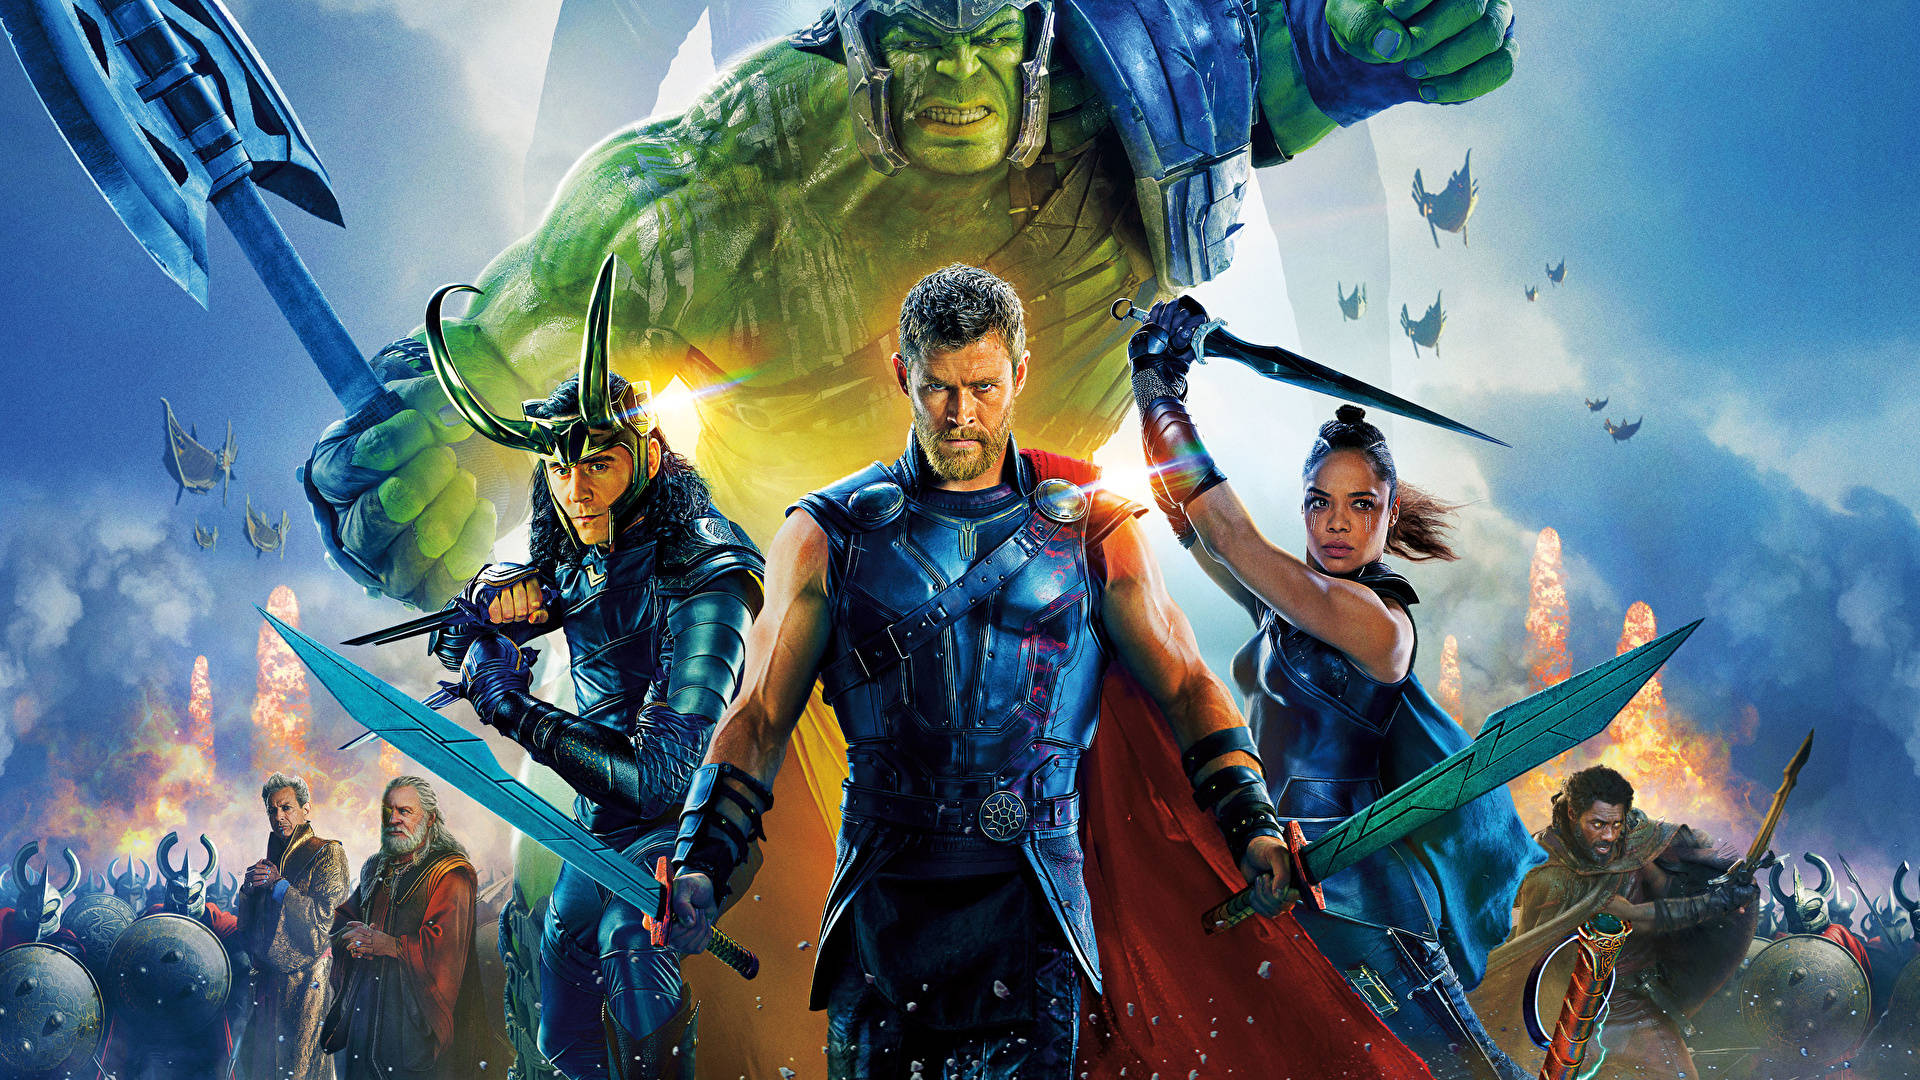 Chris Hemsworth In Marvel's Avengers